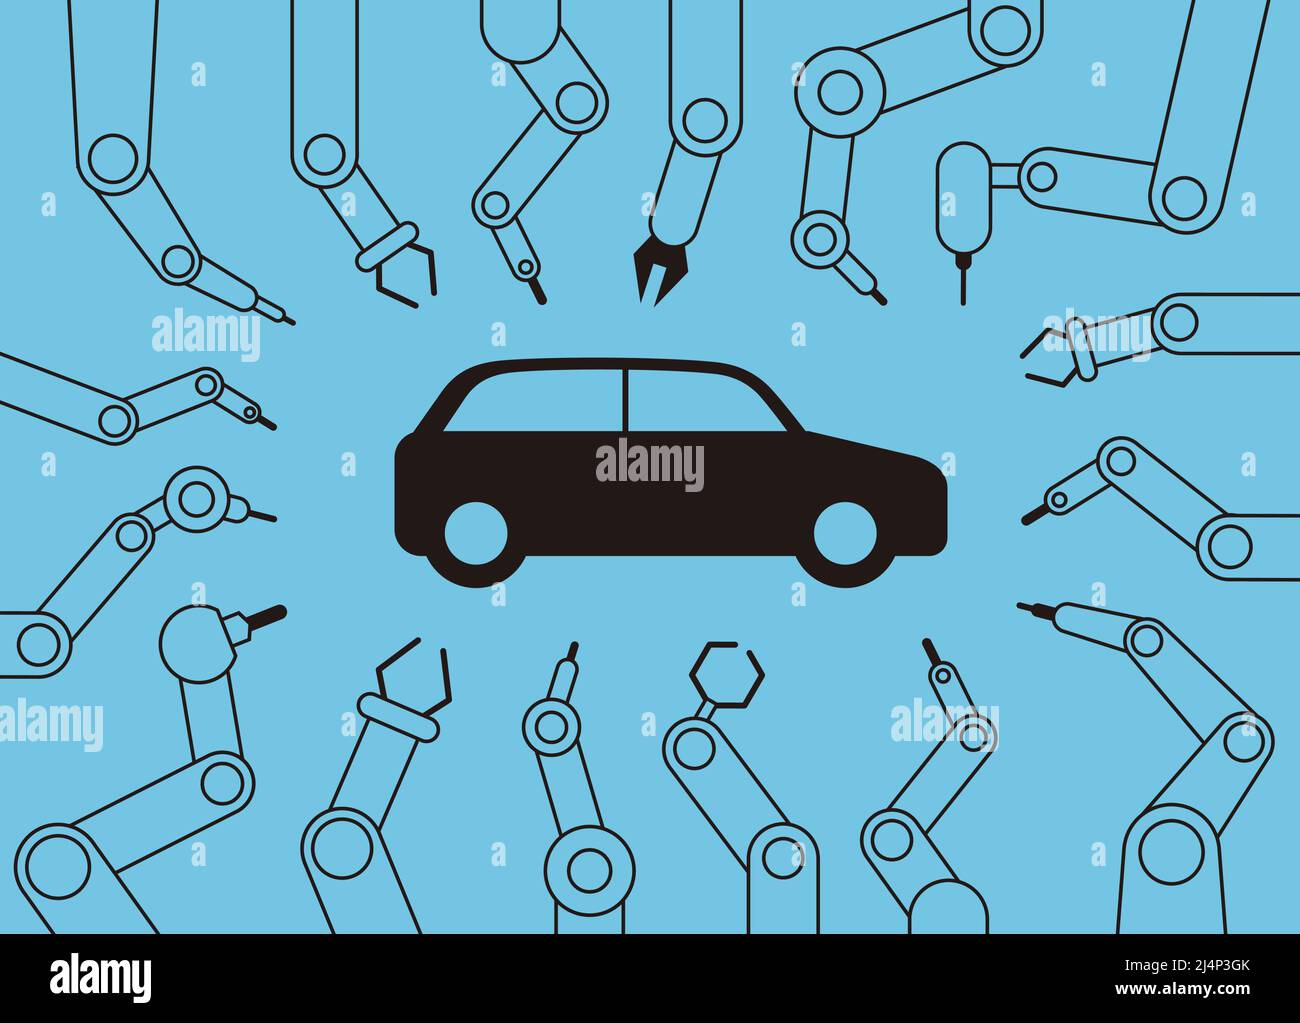 Les bras de la machine robot se concentrent ensemble sur la voiture, l'usine automatique, l'illustration vectorielle Illustration de Vecteur